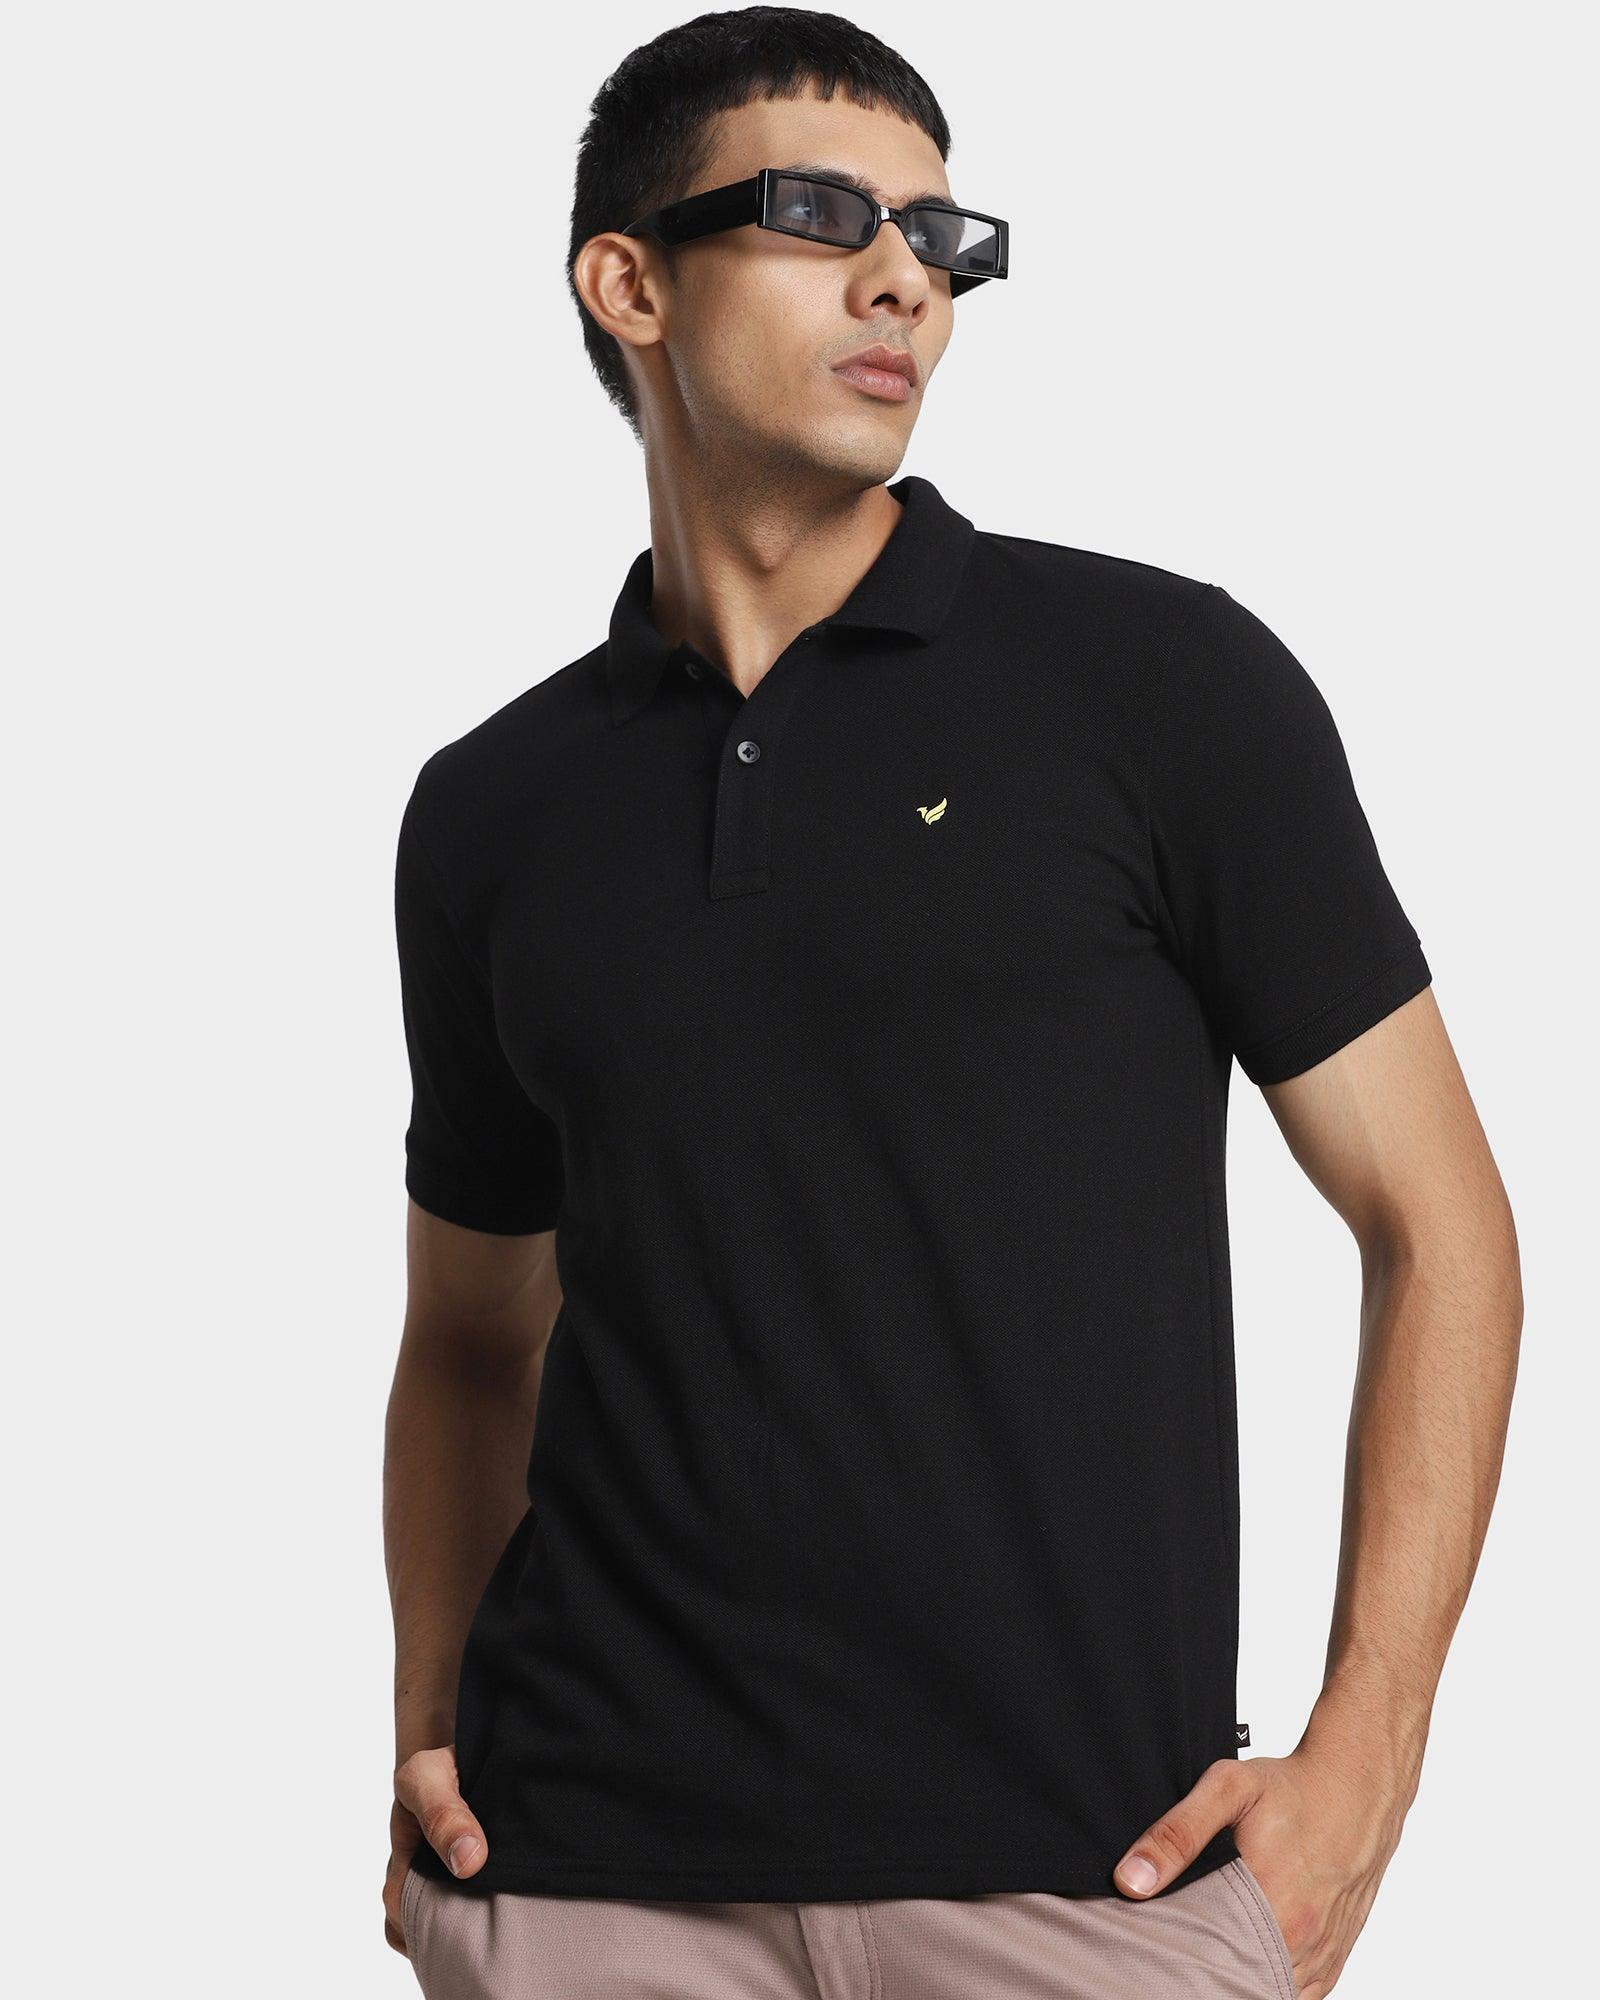 Polo Black Solid T Shirt - Romeo